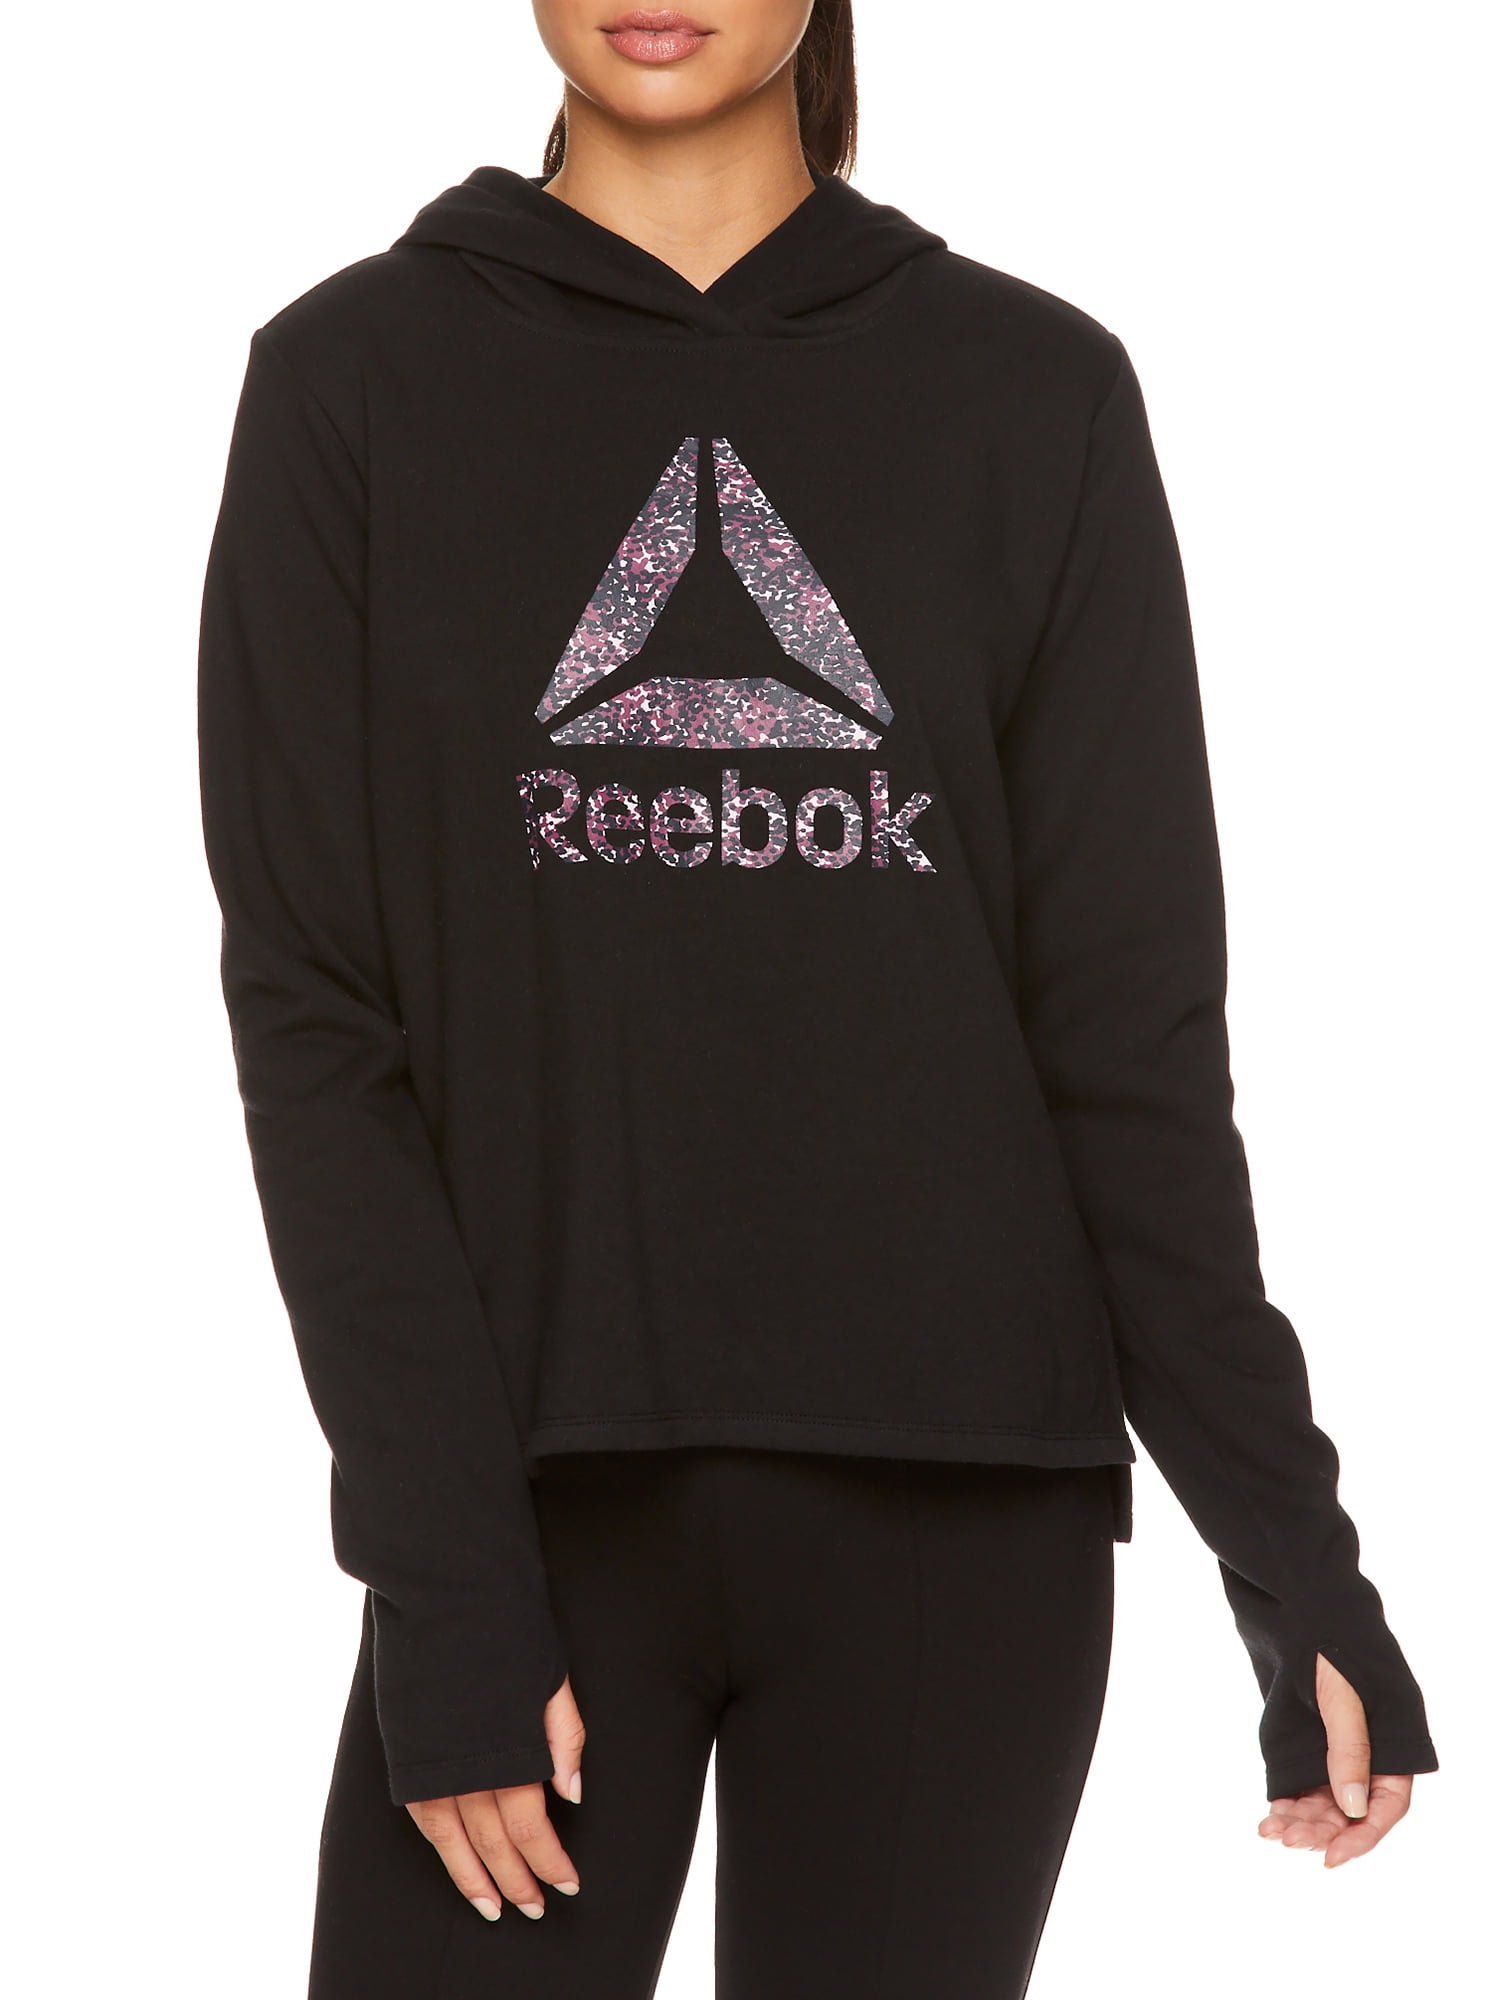 Reebok Women's Daily Zip Up Hoodie, Size XS-XXXL - Walmart.com